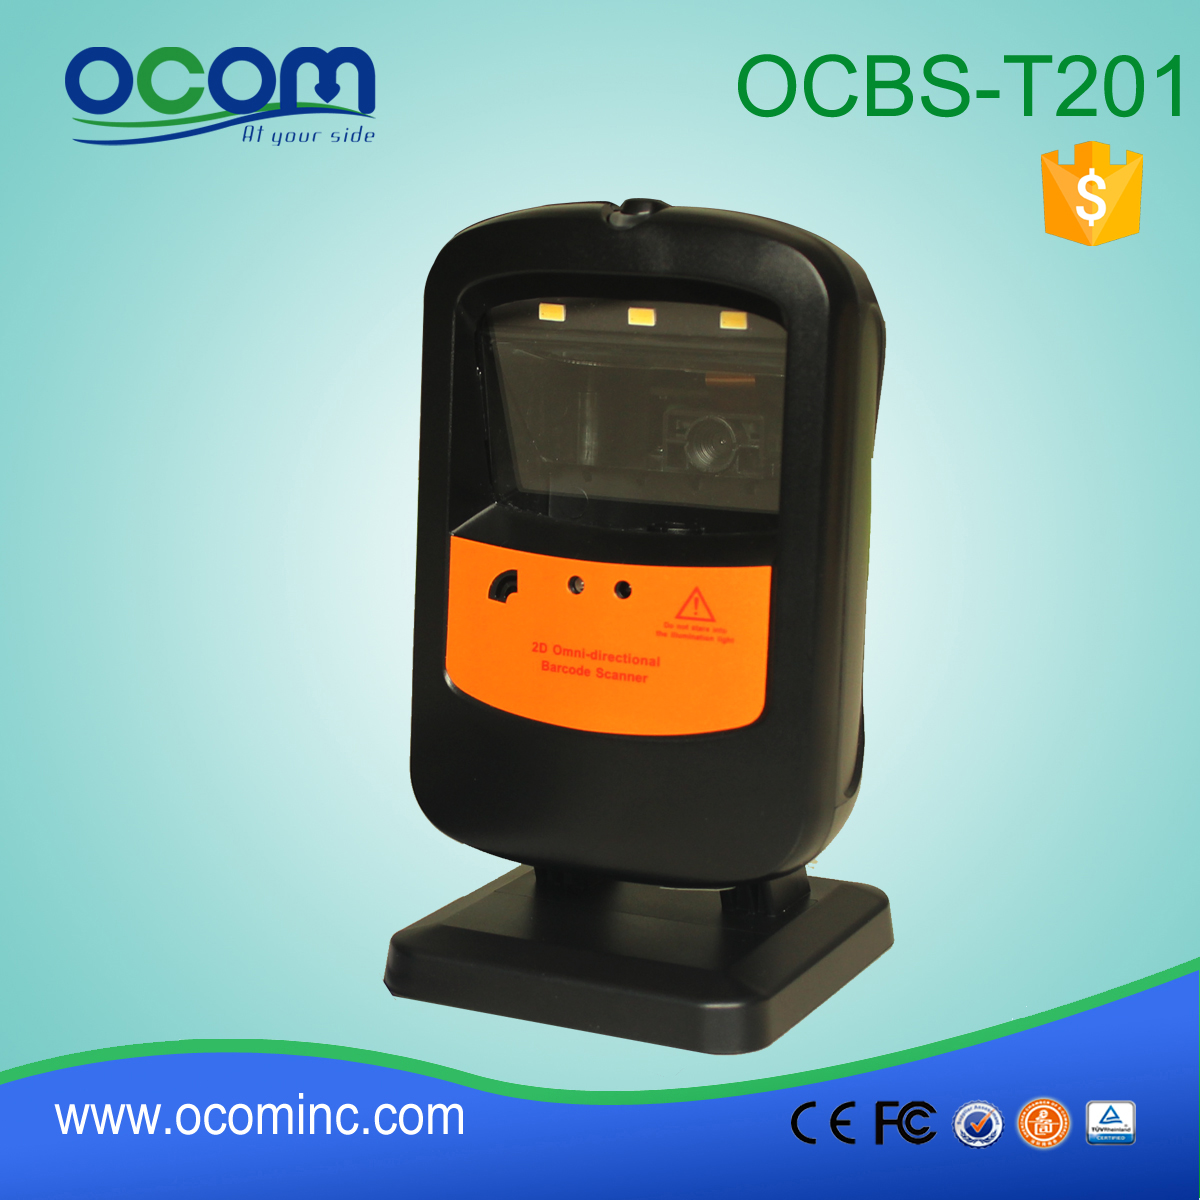 OCBs-T201: υπεραστικές σαρωτή γραμμωτού κώδικα Mini USB, αναγνώστη γραμμωτού κώδικα τιμής